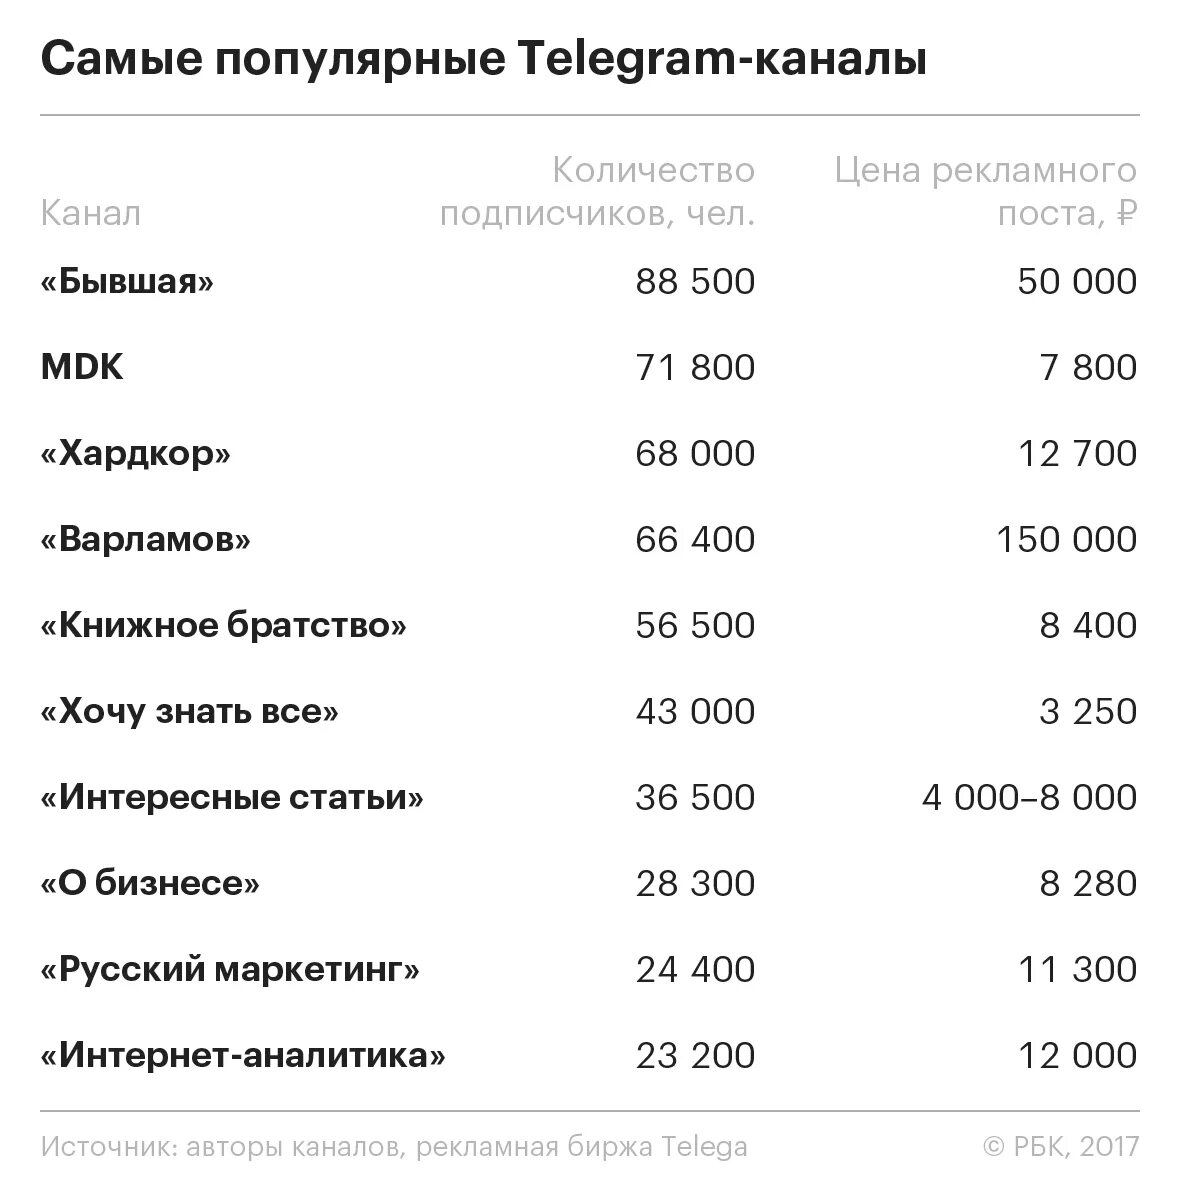 Telegram channel s. Самый популярный Telegram канал. Популярные телеграм каналы. Самые популярные телеграм каналы. Популярныемканалы телеграм.